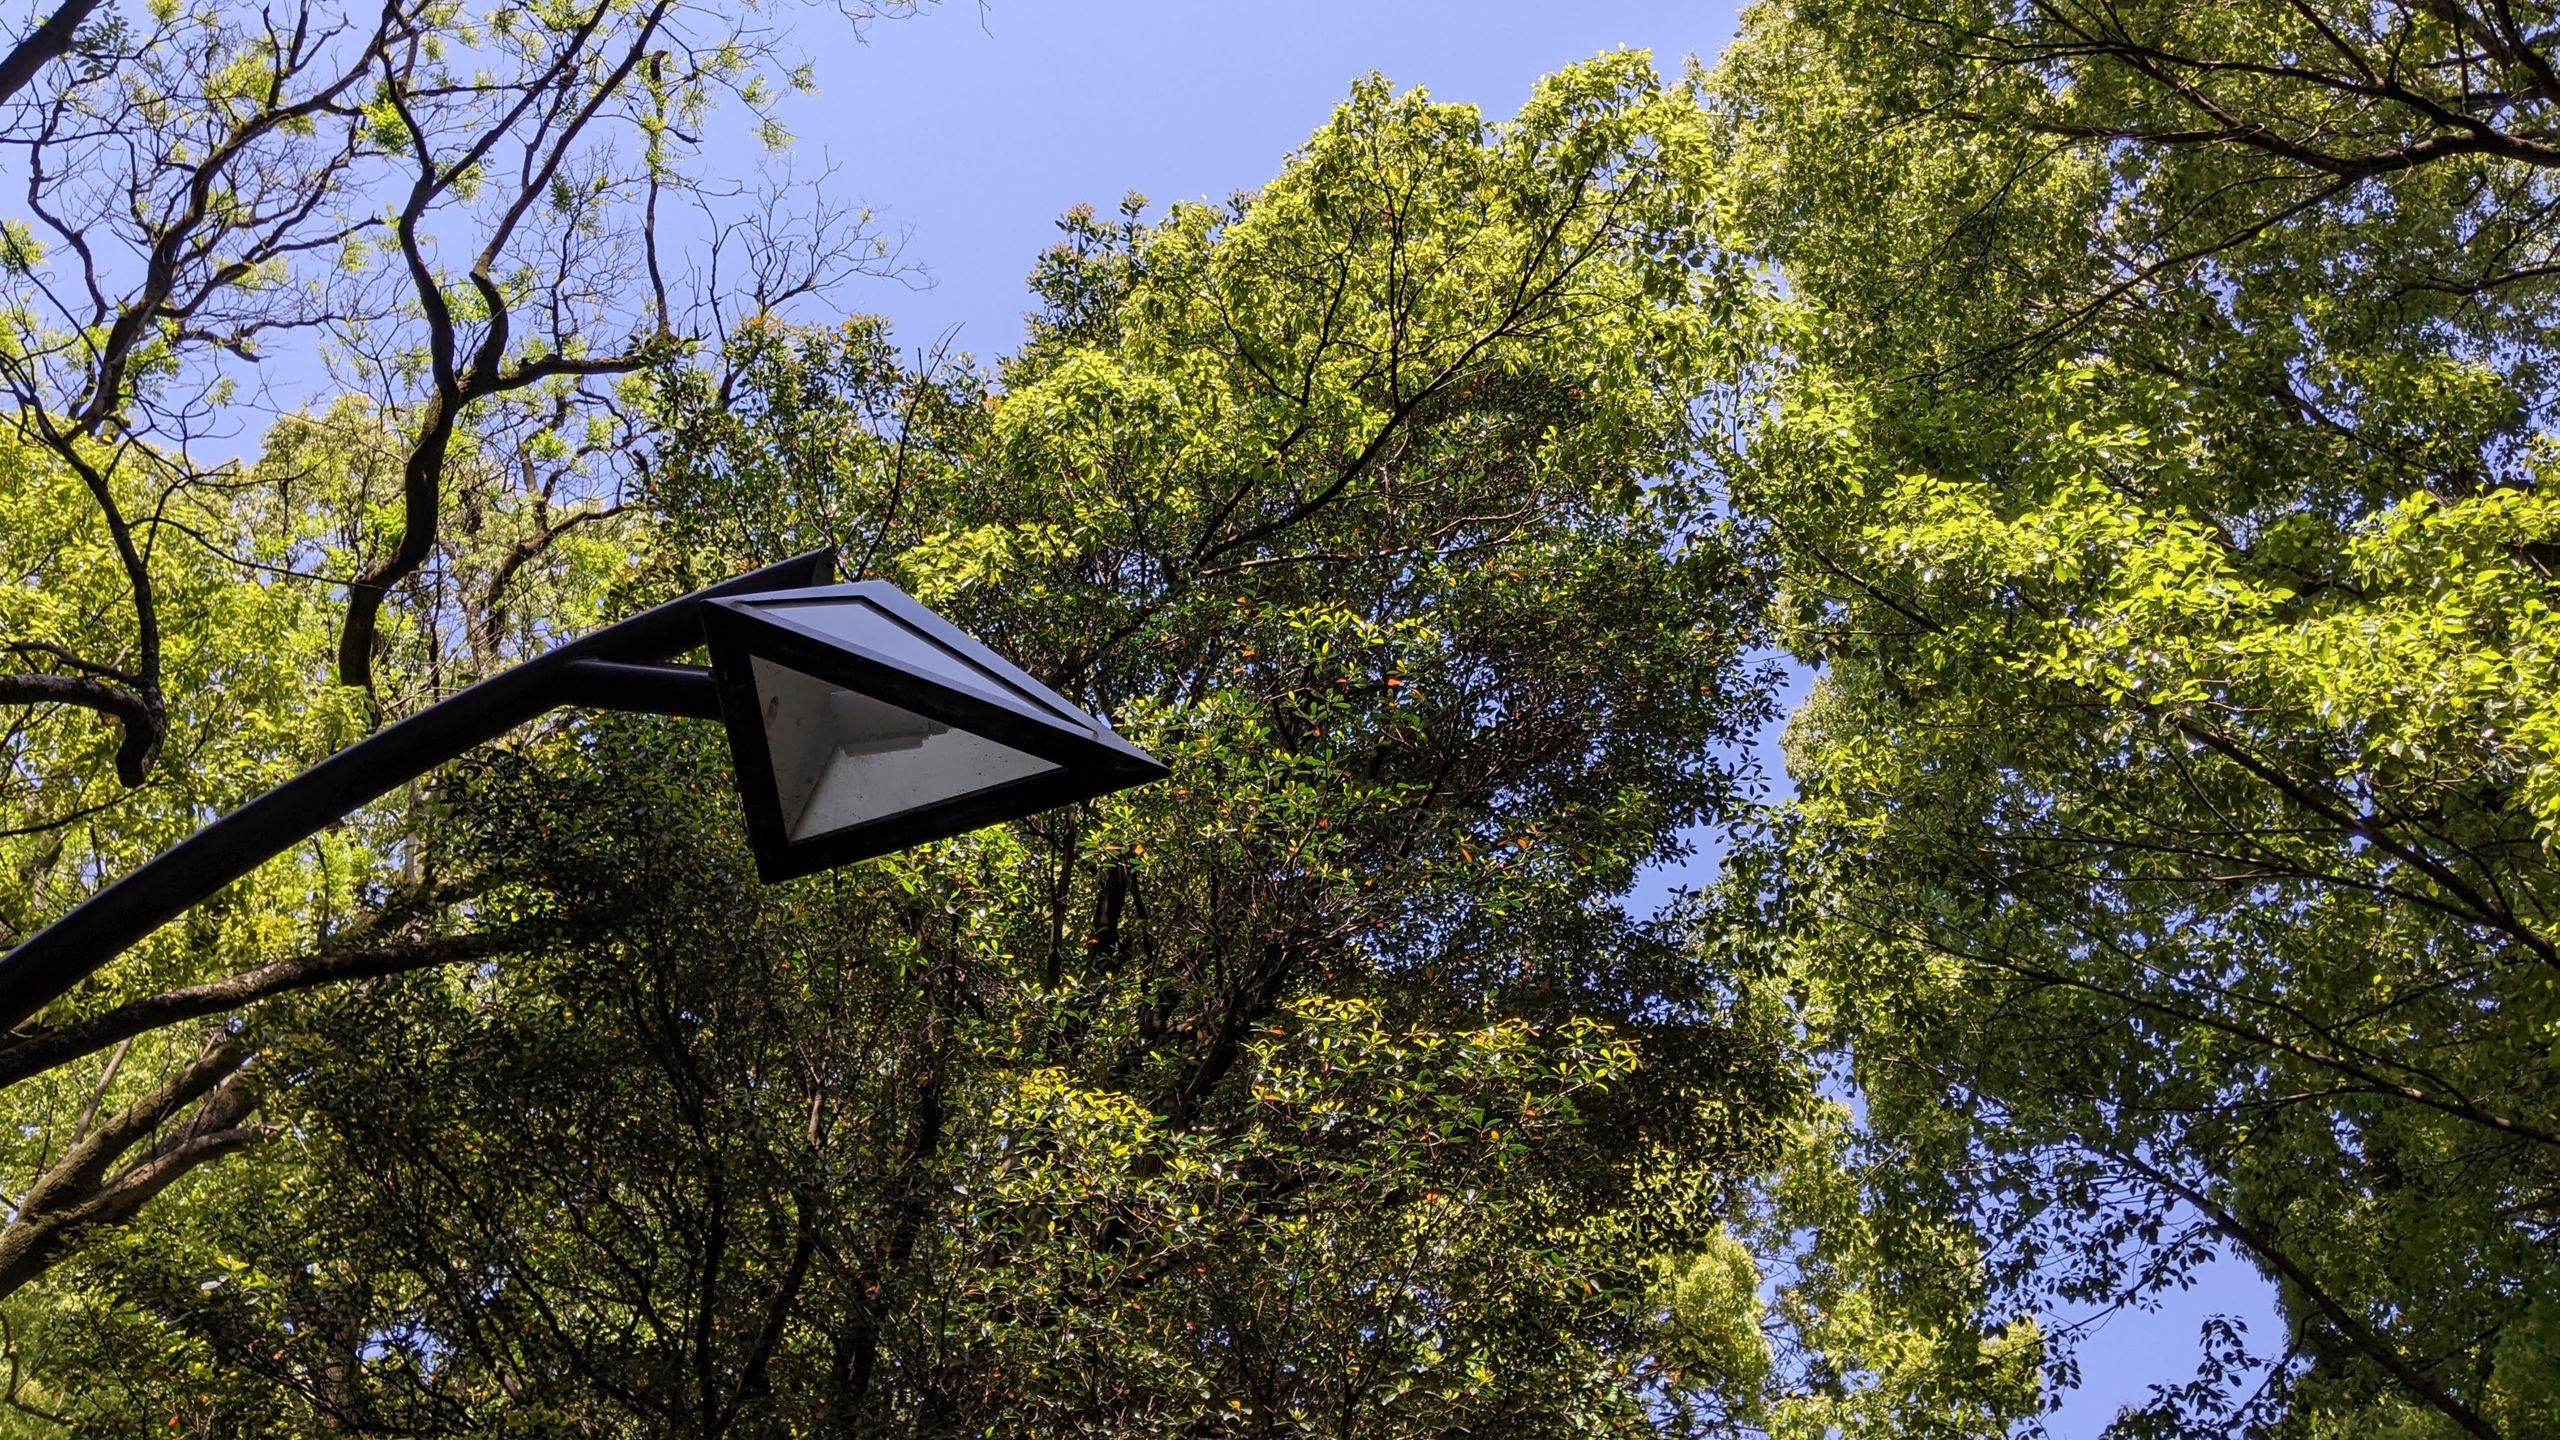 上野恩賜公園で使われている三角錐の照明が木々の間にそびえている